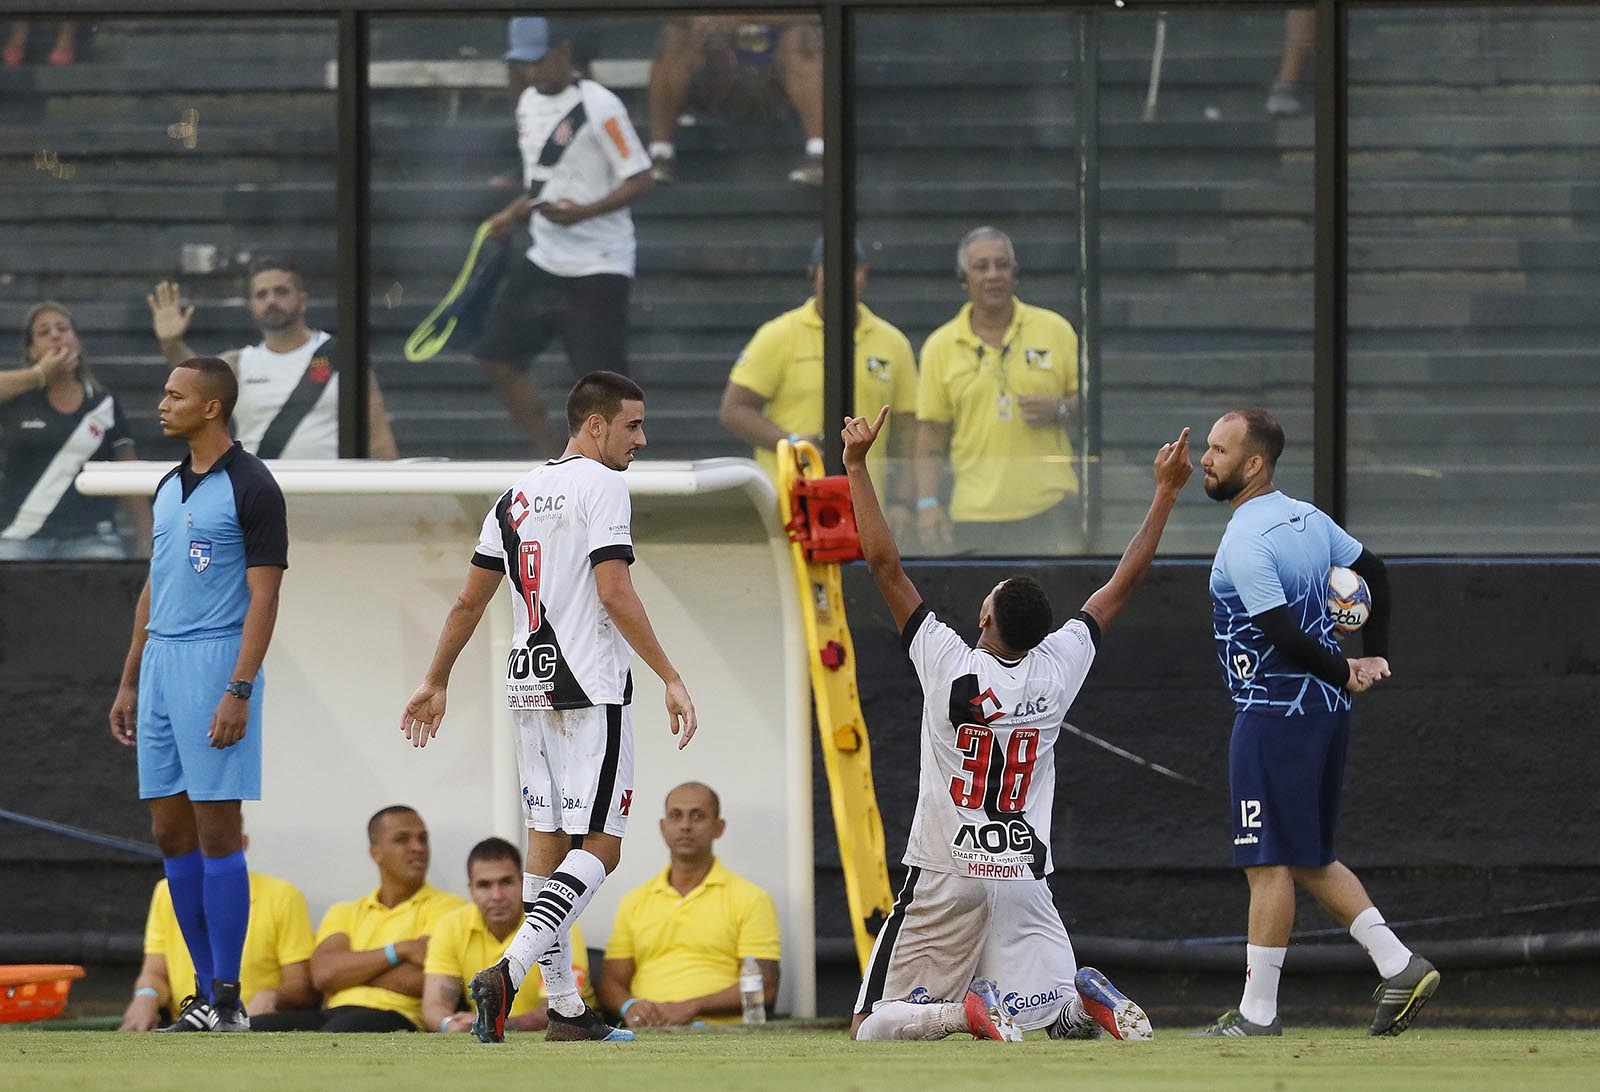 Carioca: Artilheiro do Vasco, Marrony aprova esquema do time com dois meias